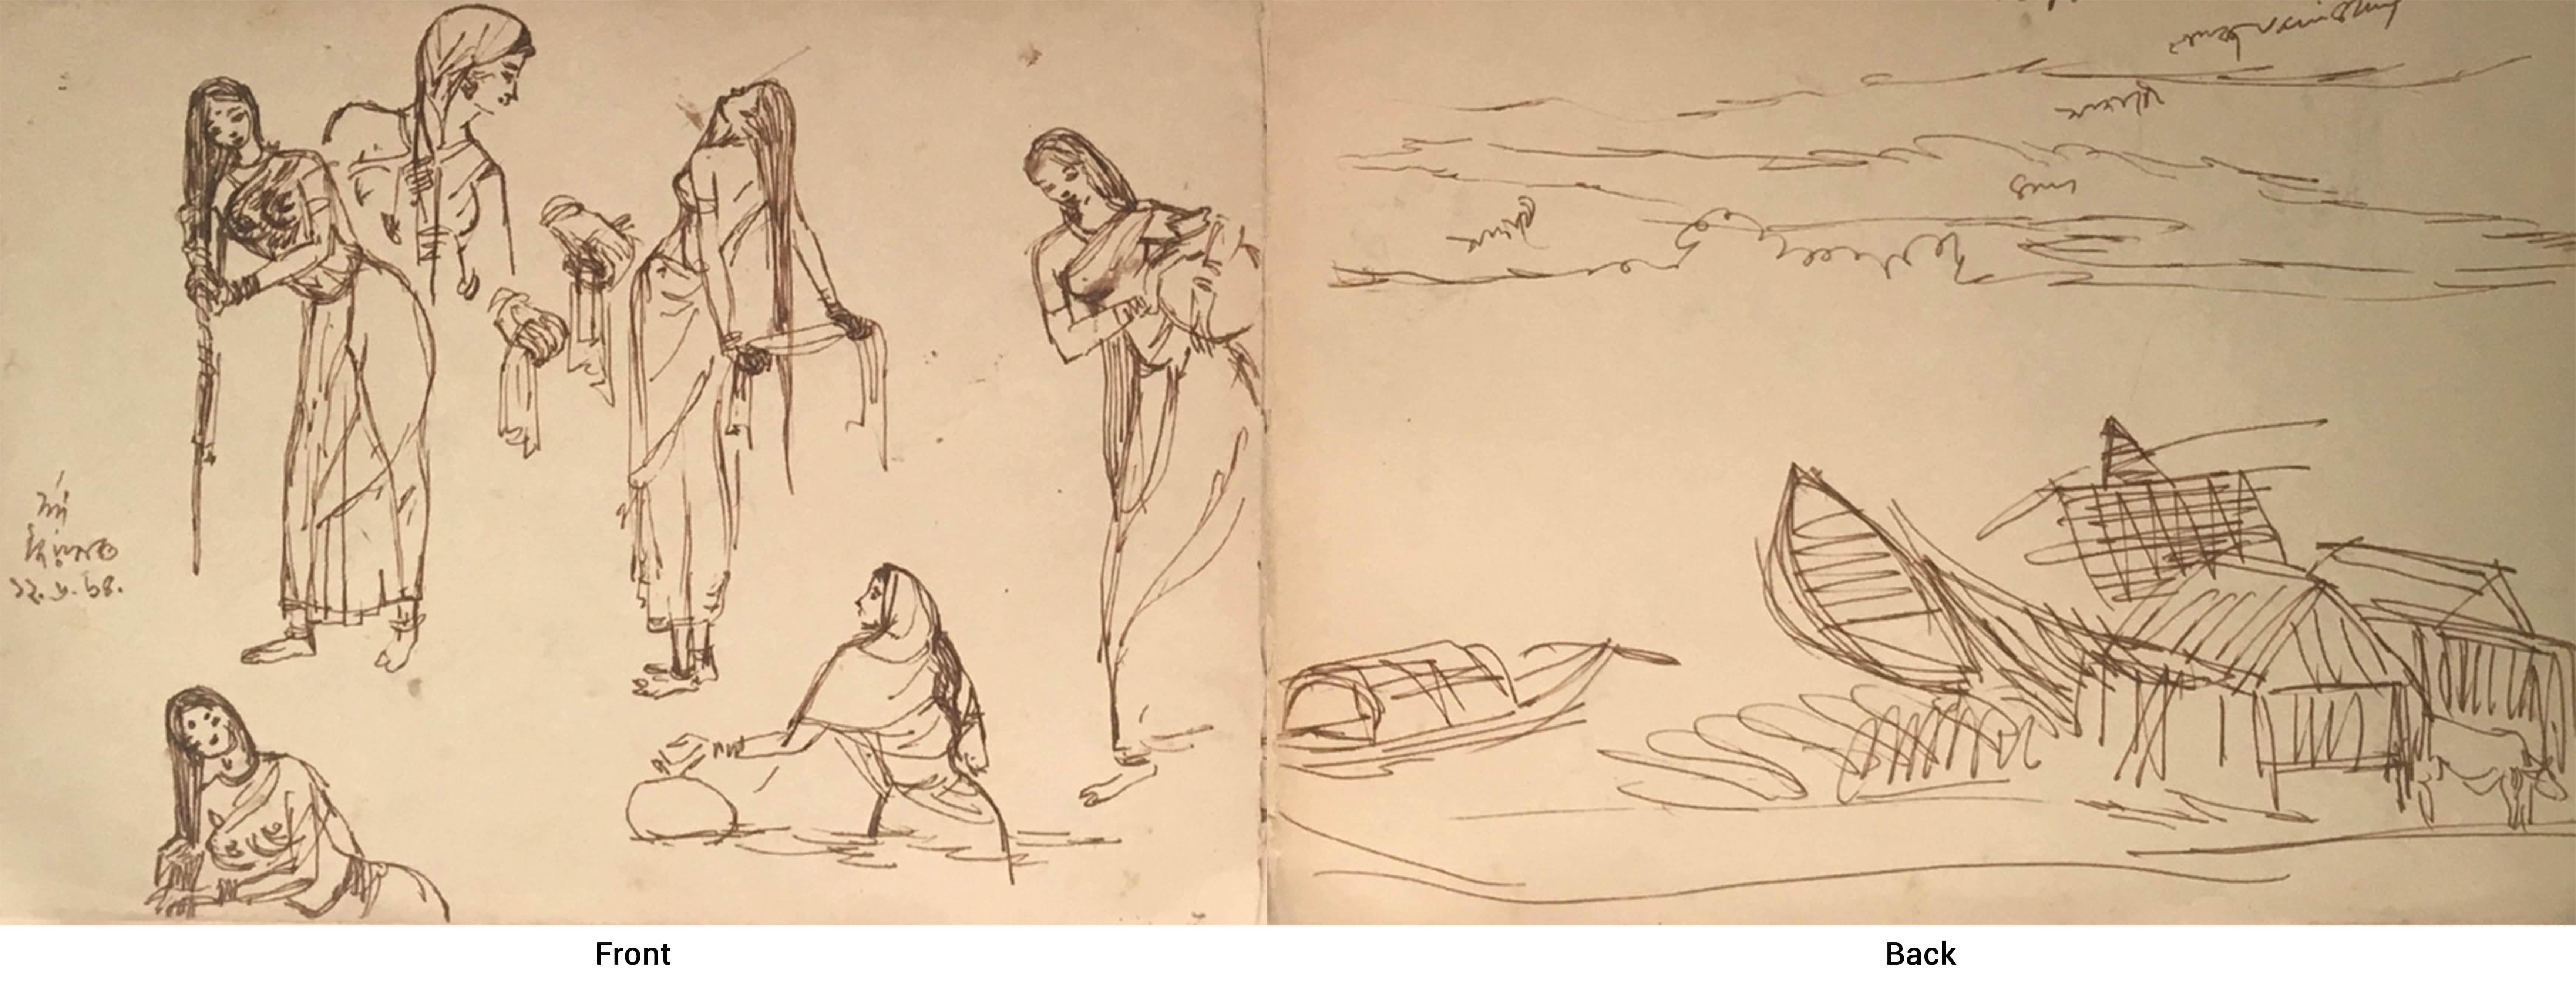 Bague, femme se baignant, maisons, encre sur papier de l'artiste indien moderne « en stock »